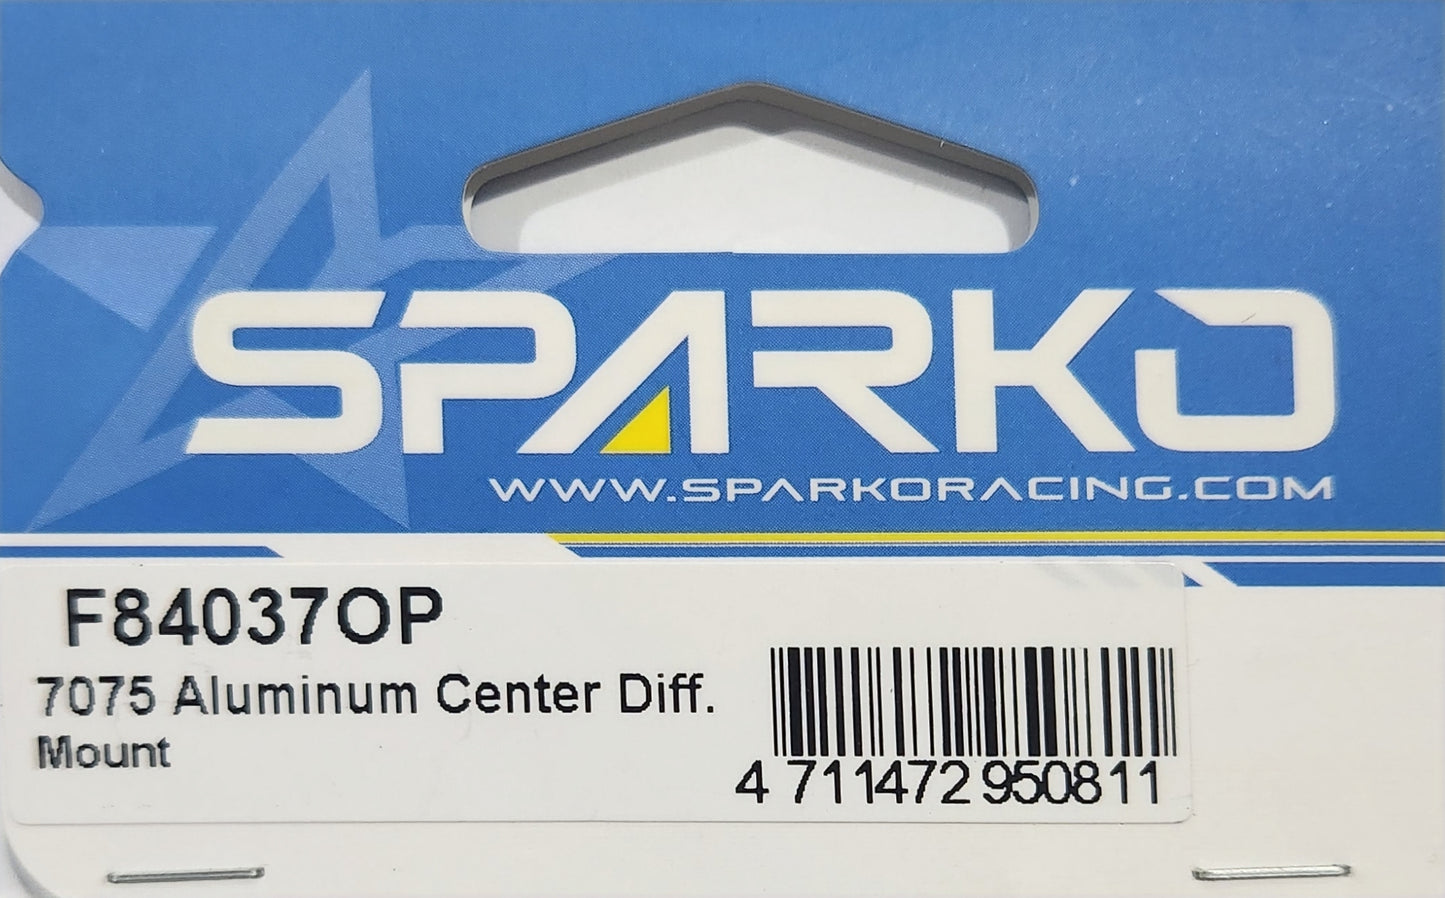 Sparko Racing 7075 Aluminum Center Diff. Mount